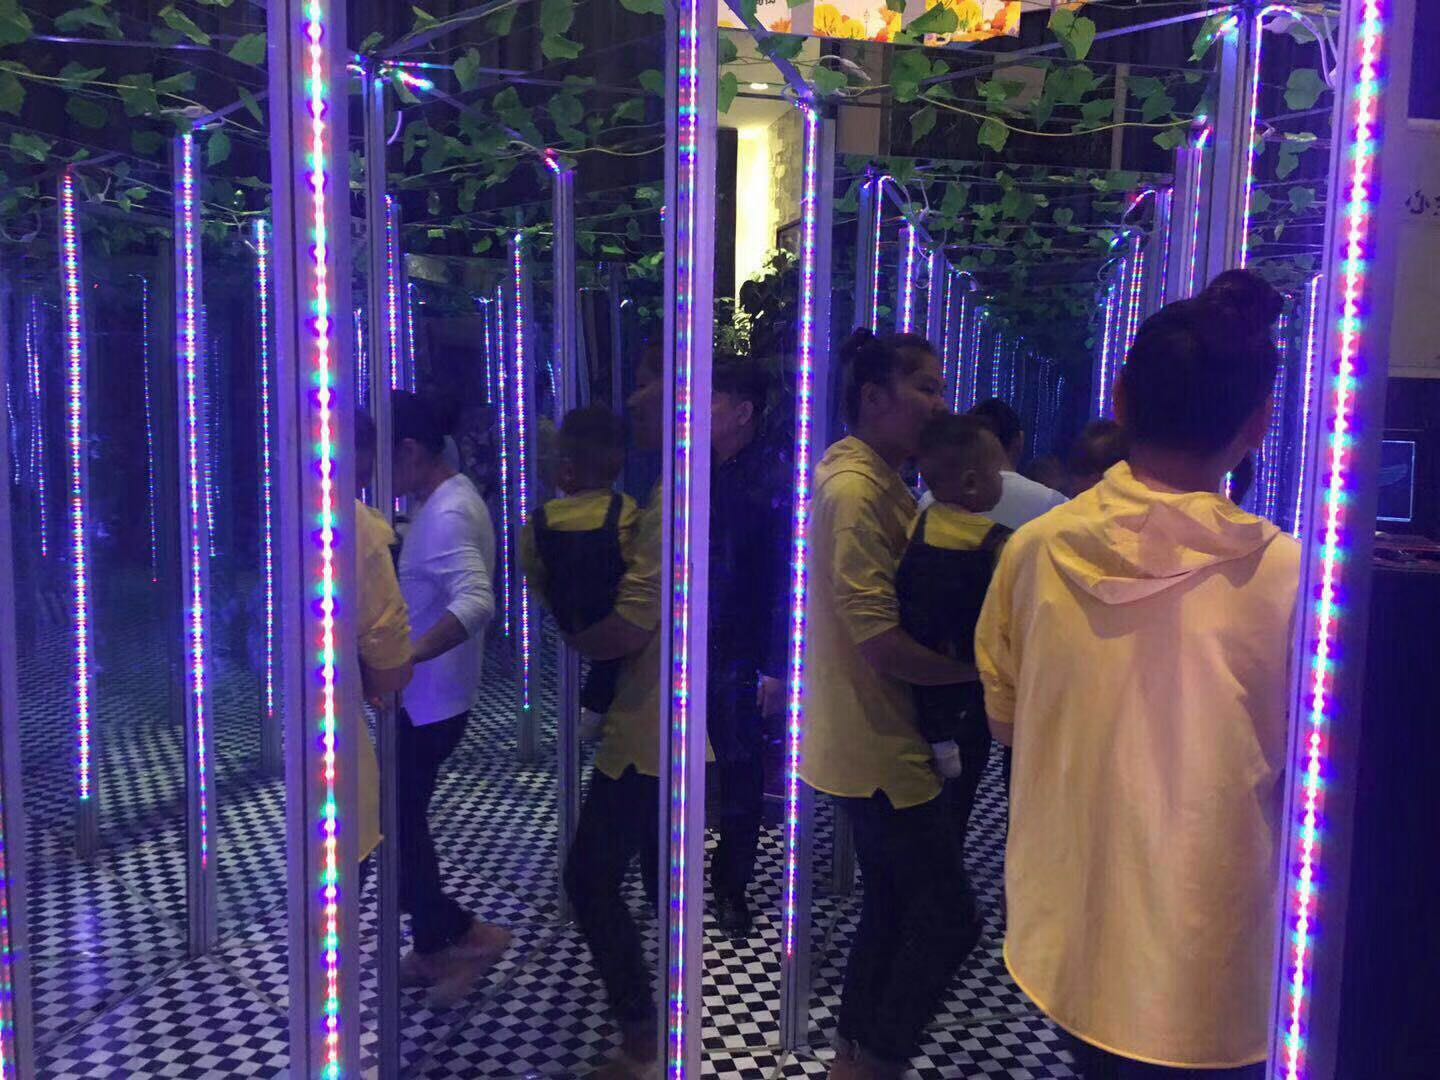 上海市镜子迷宫 七彩沙滩 灯光展厂家镜子迷宫采用镜面钢材制作 里面若干条线路使游客迷惑 镜子迷宫 七彩沙滩 灯光展